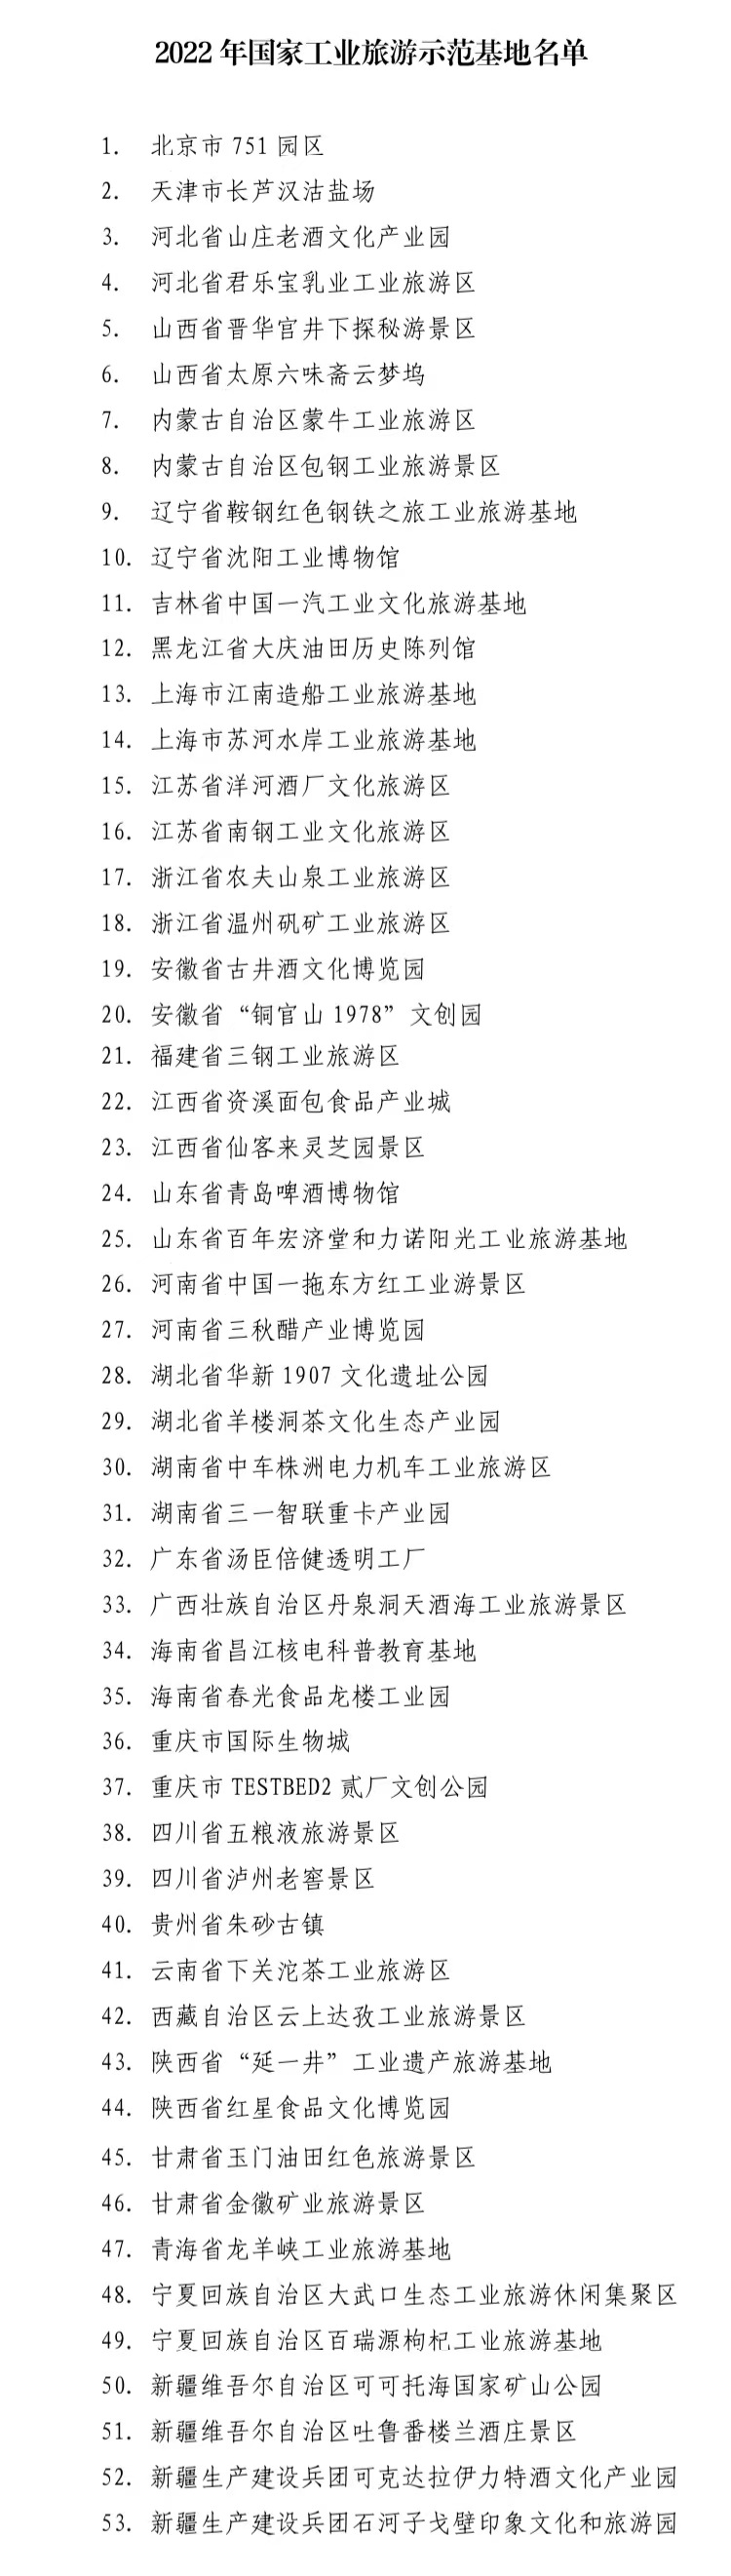 大庆油田历史陈列馆等53家单位被评为国家工业旅游示范基地